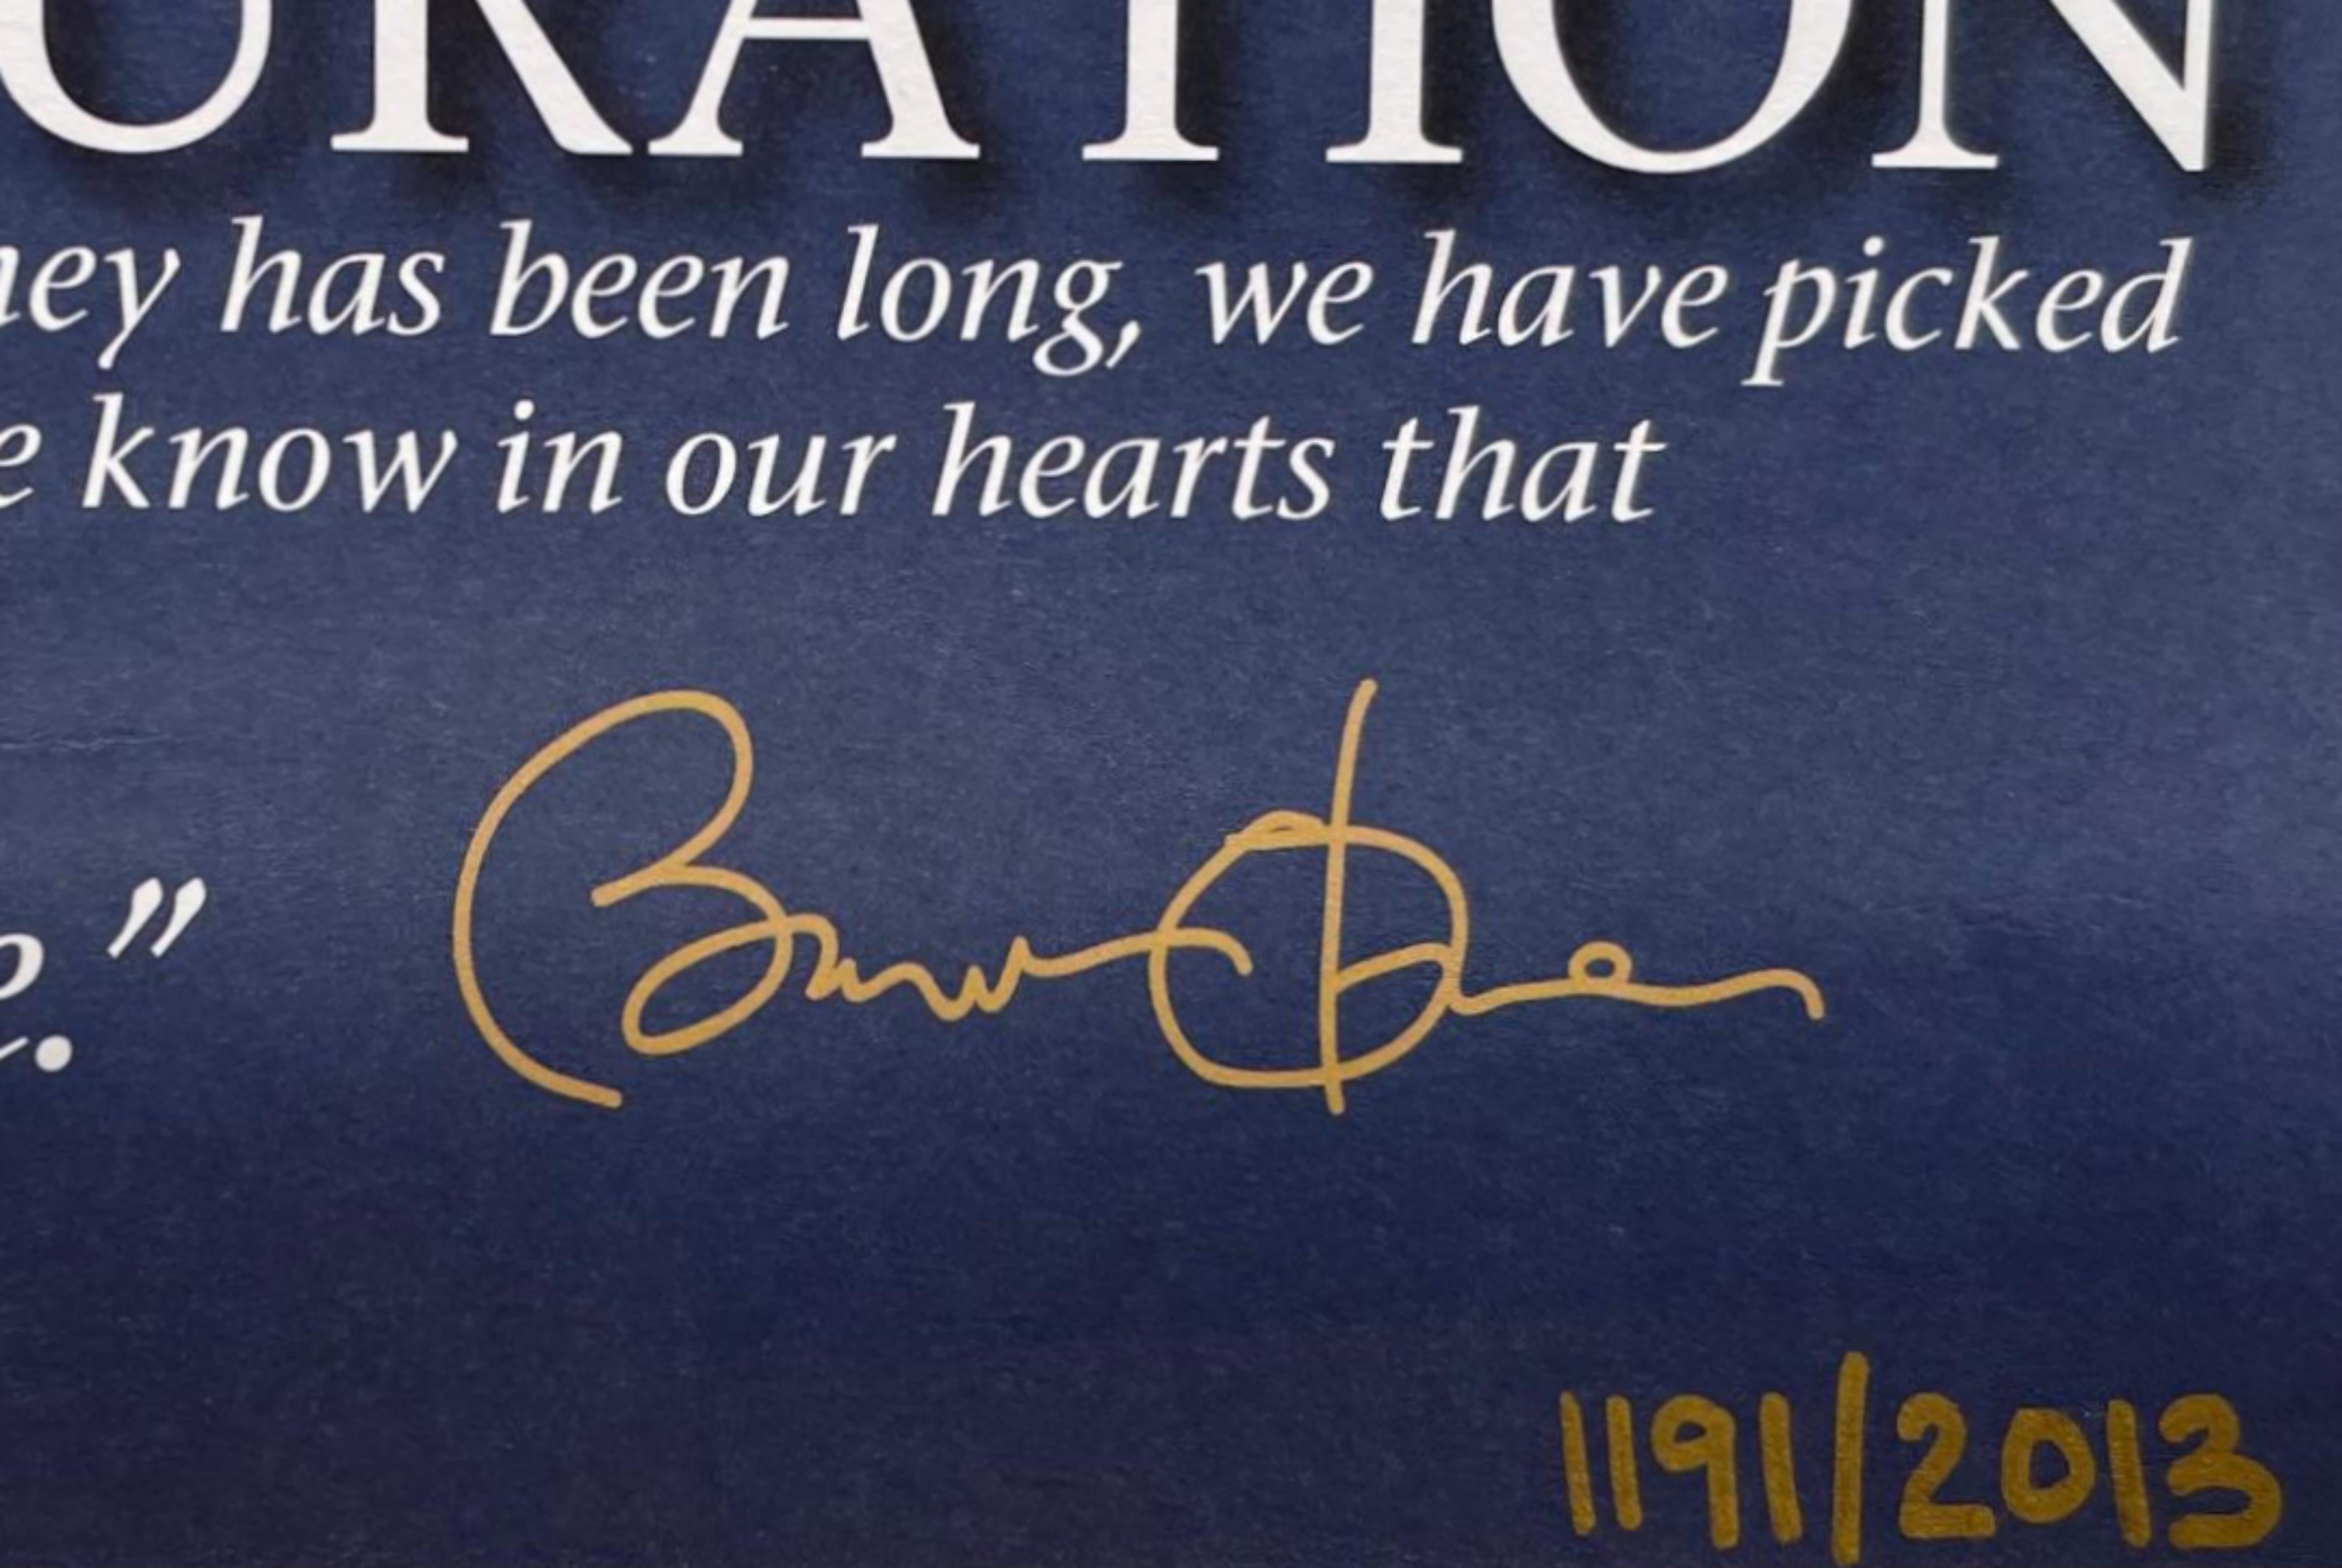 La 57e inauguration présidentielle, édition limitée, plaque signée Barack Obama  - Print de Chuck Close